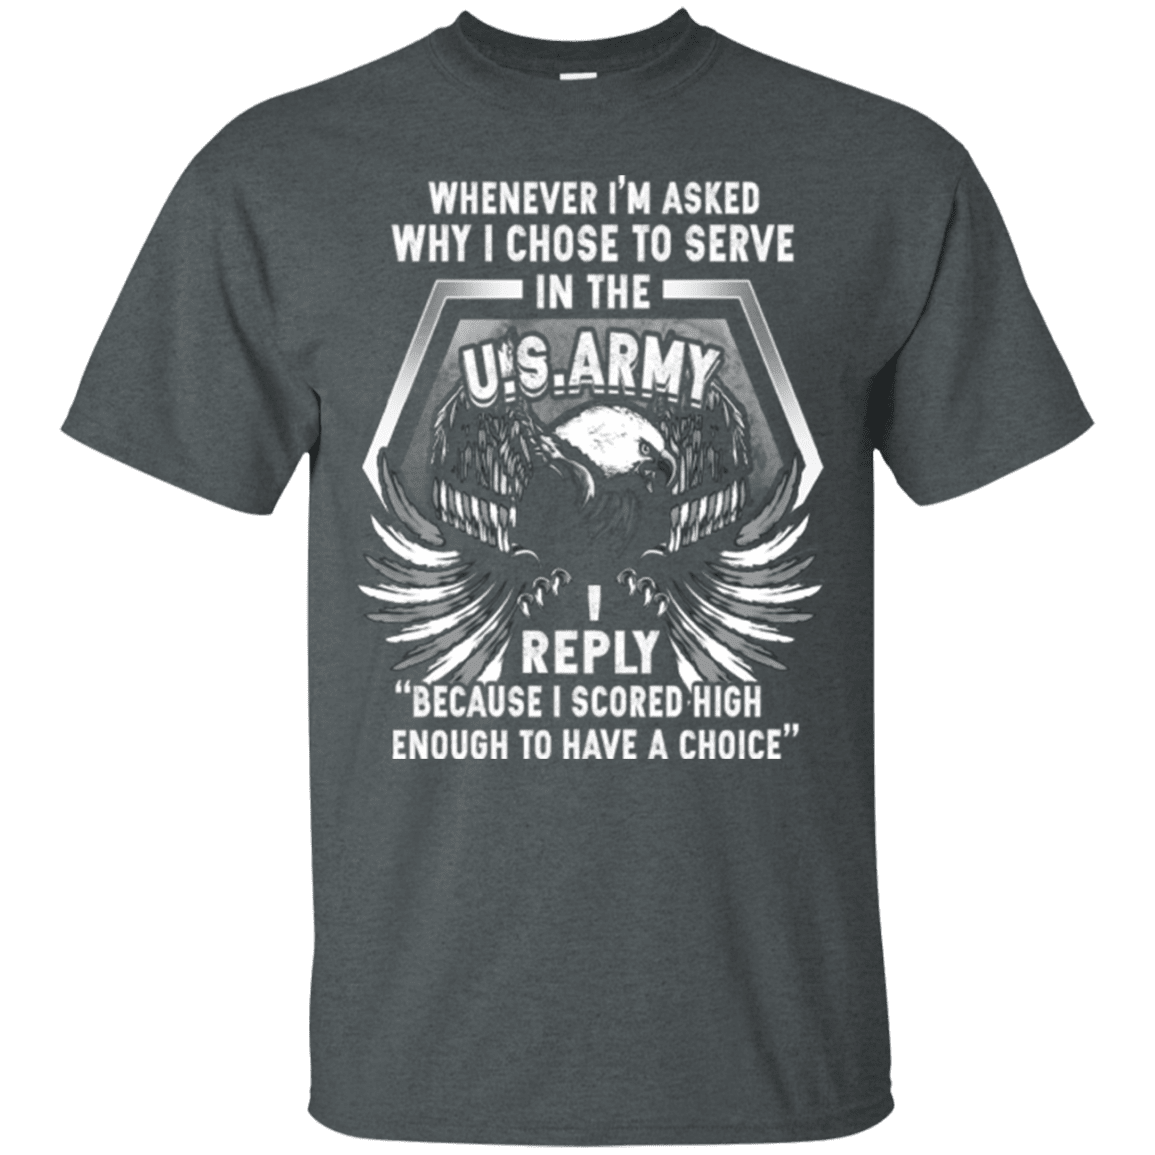 US ARMY VETERAN TSHIRT-TShirt-Army-Veterans Nation